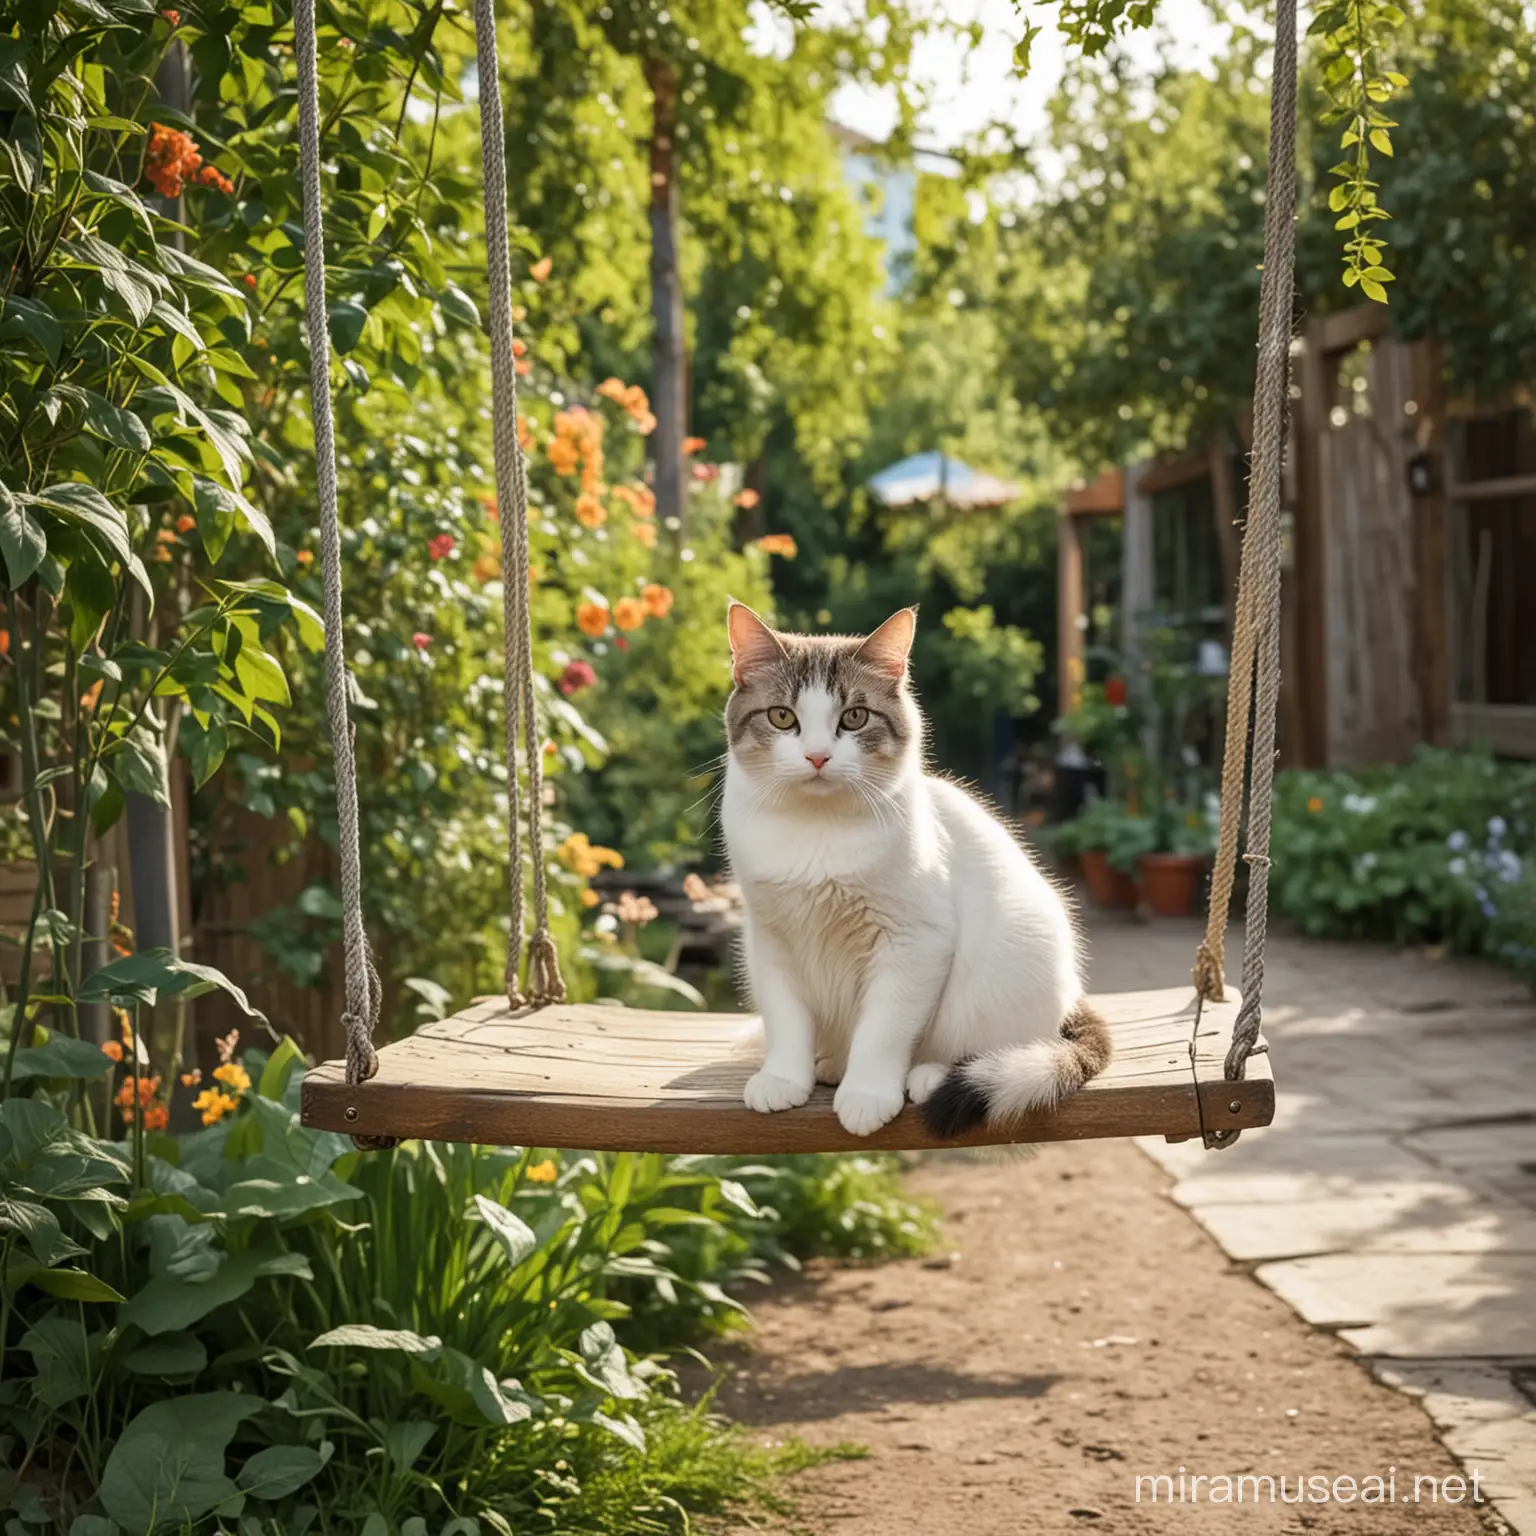 Cat Relaxing on Garden Swing in Charming Street Scene